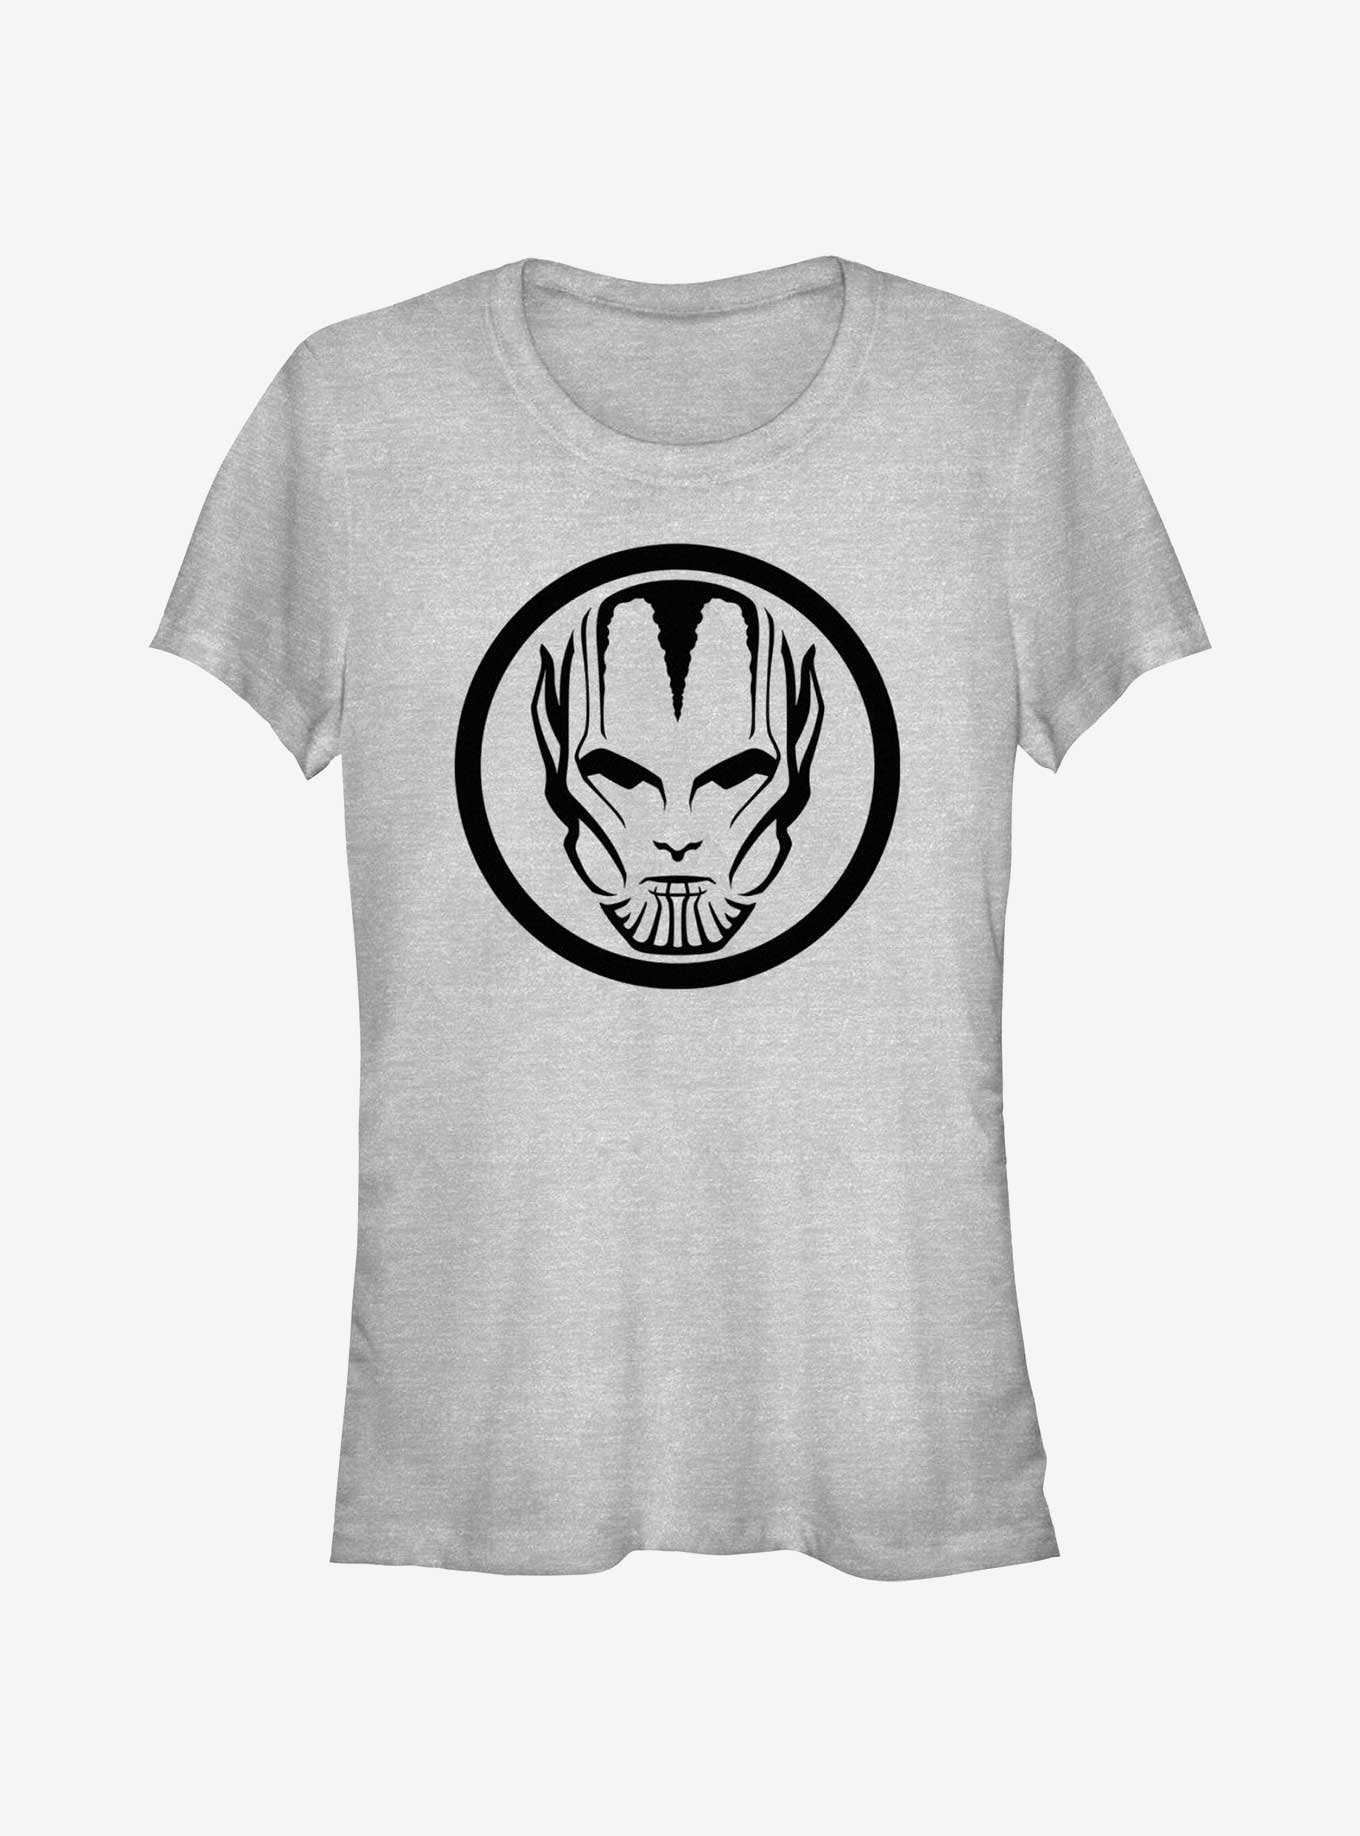 Marvel Secret Invasion Invader Icon Girls T-Shirt, , hi-res